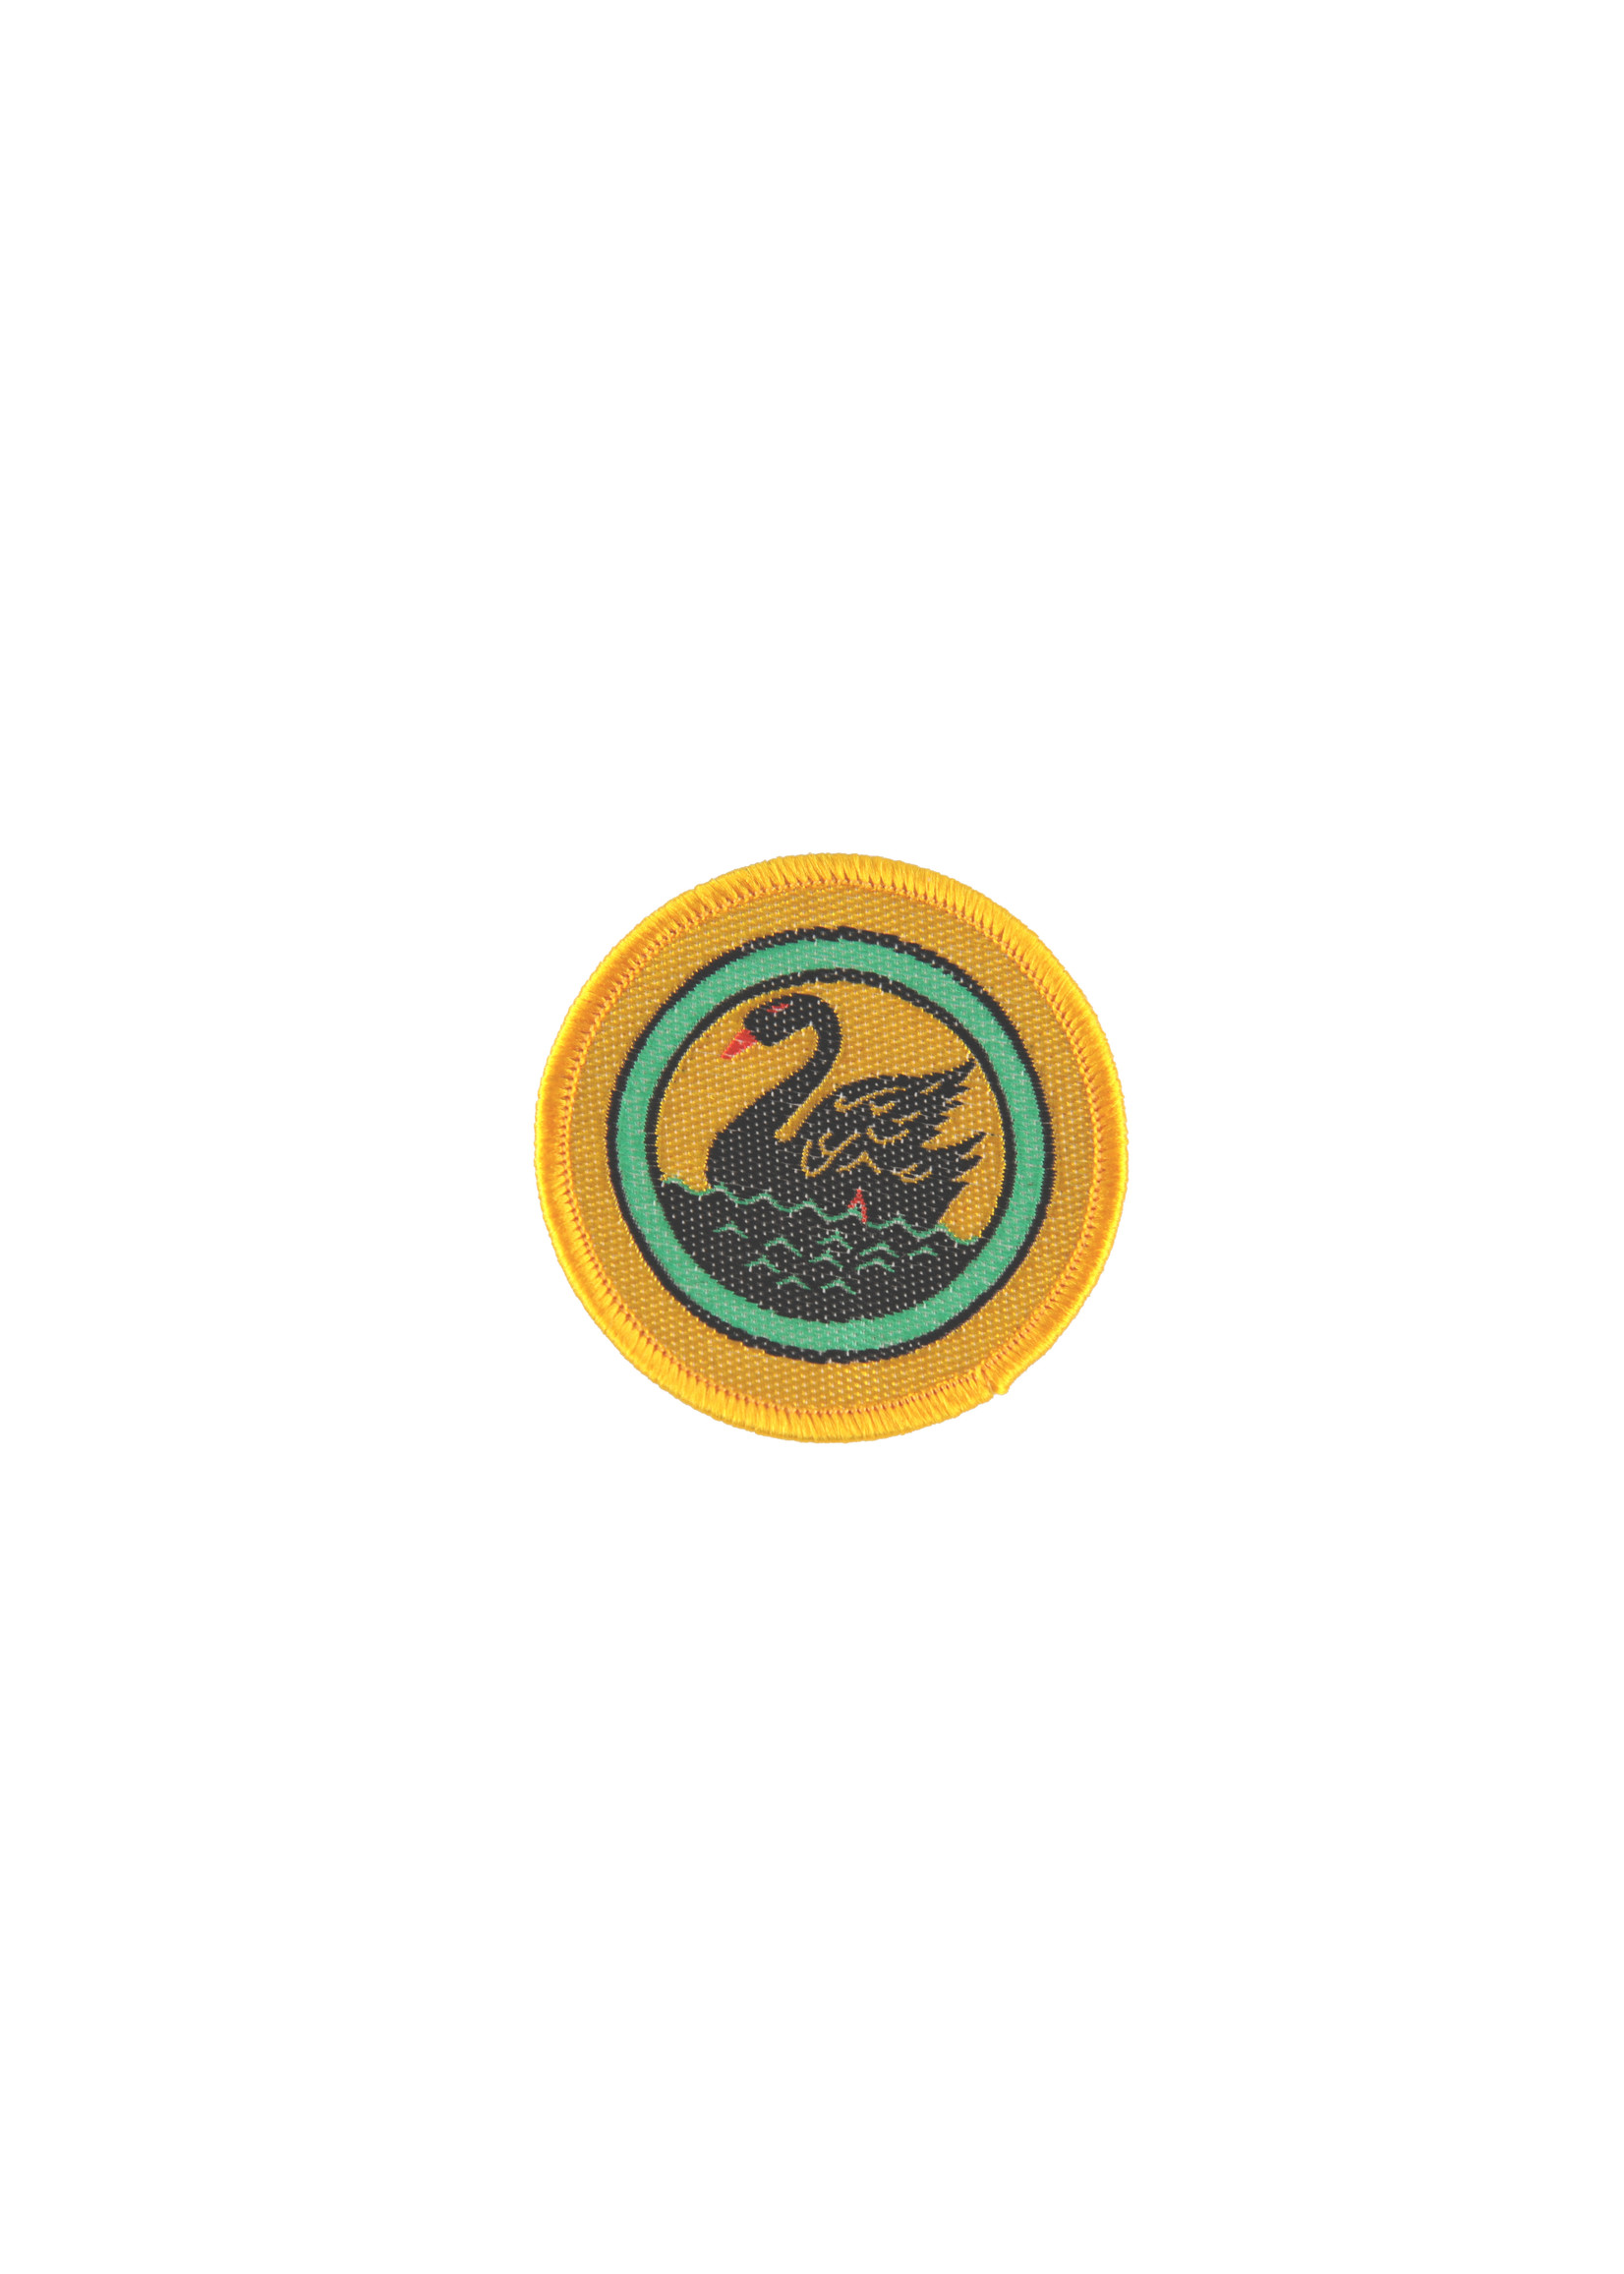 WA State Swan Badge